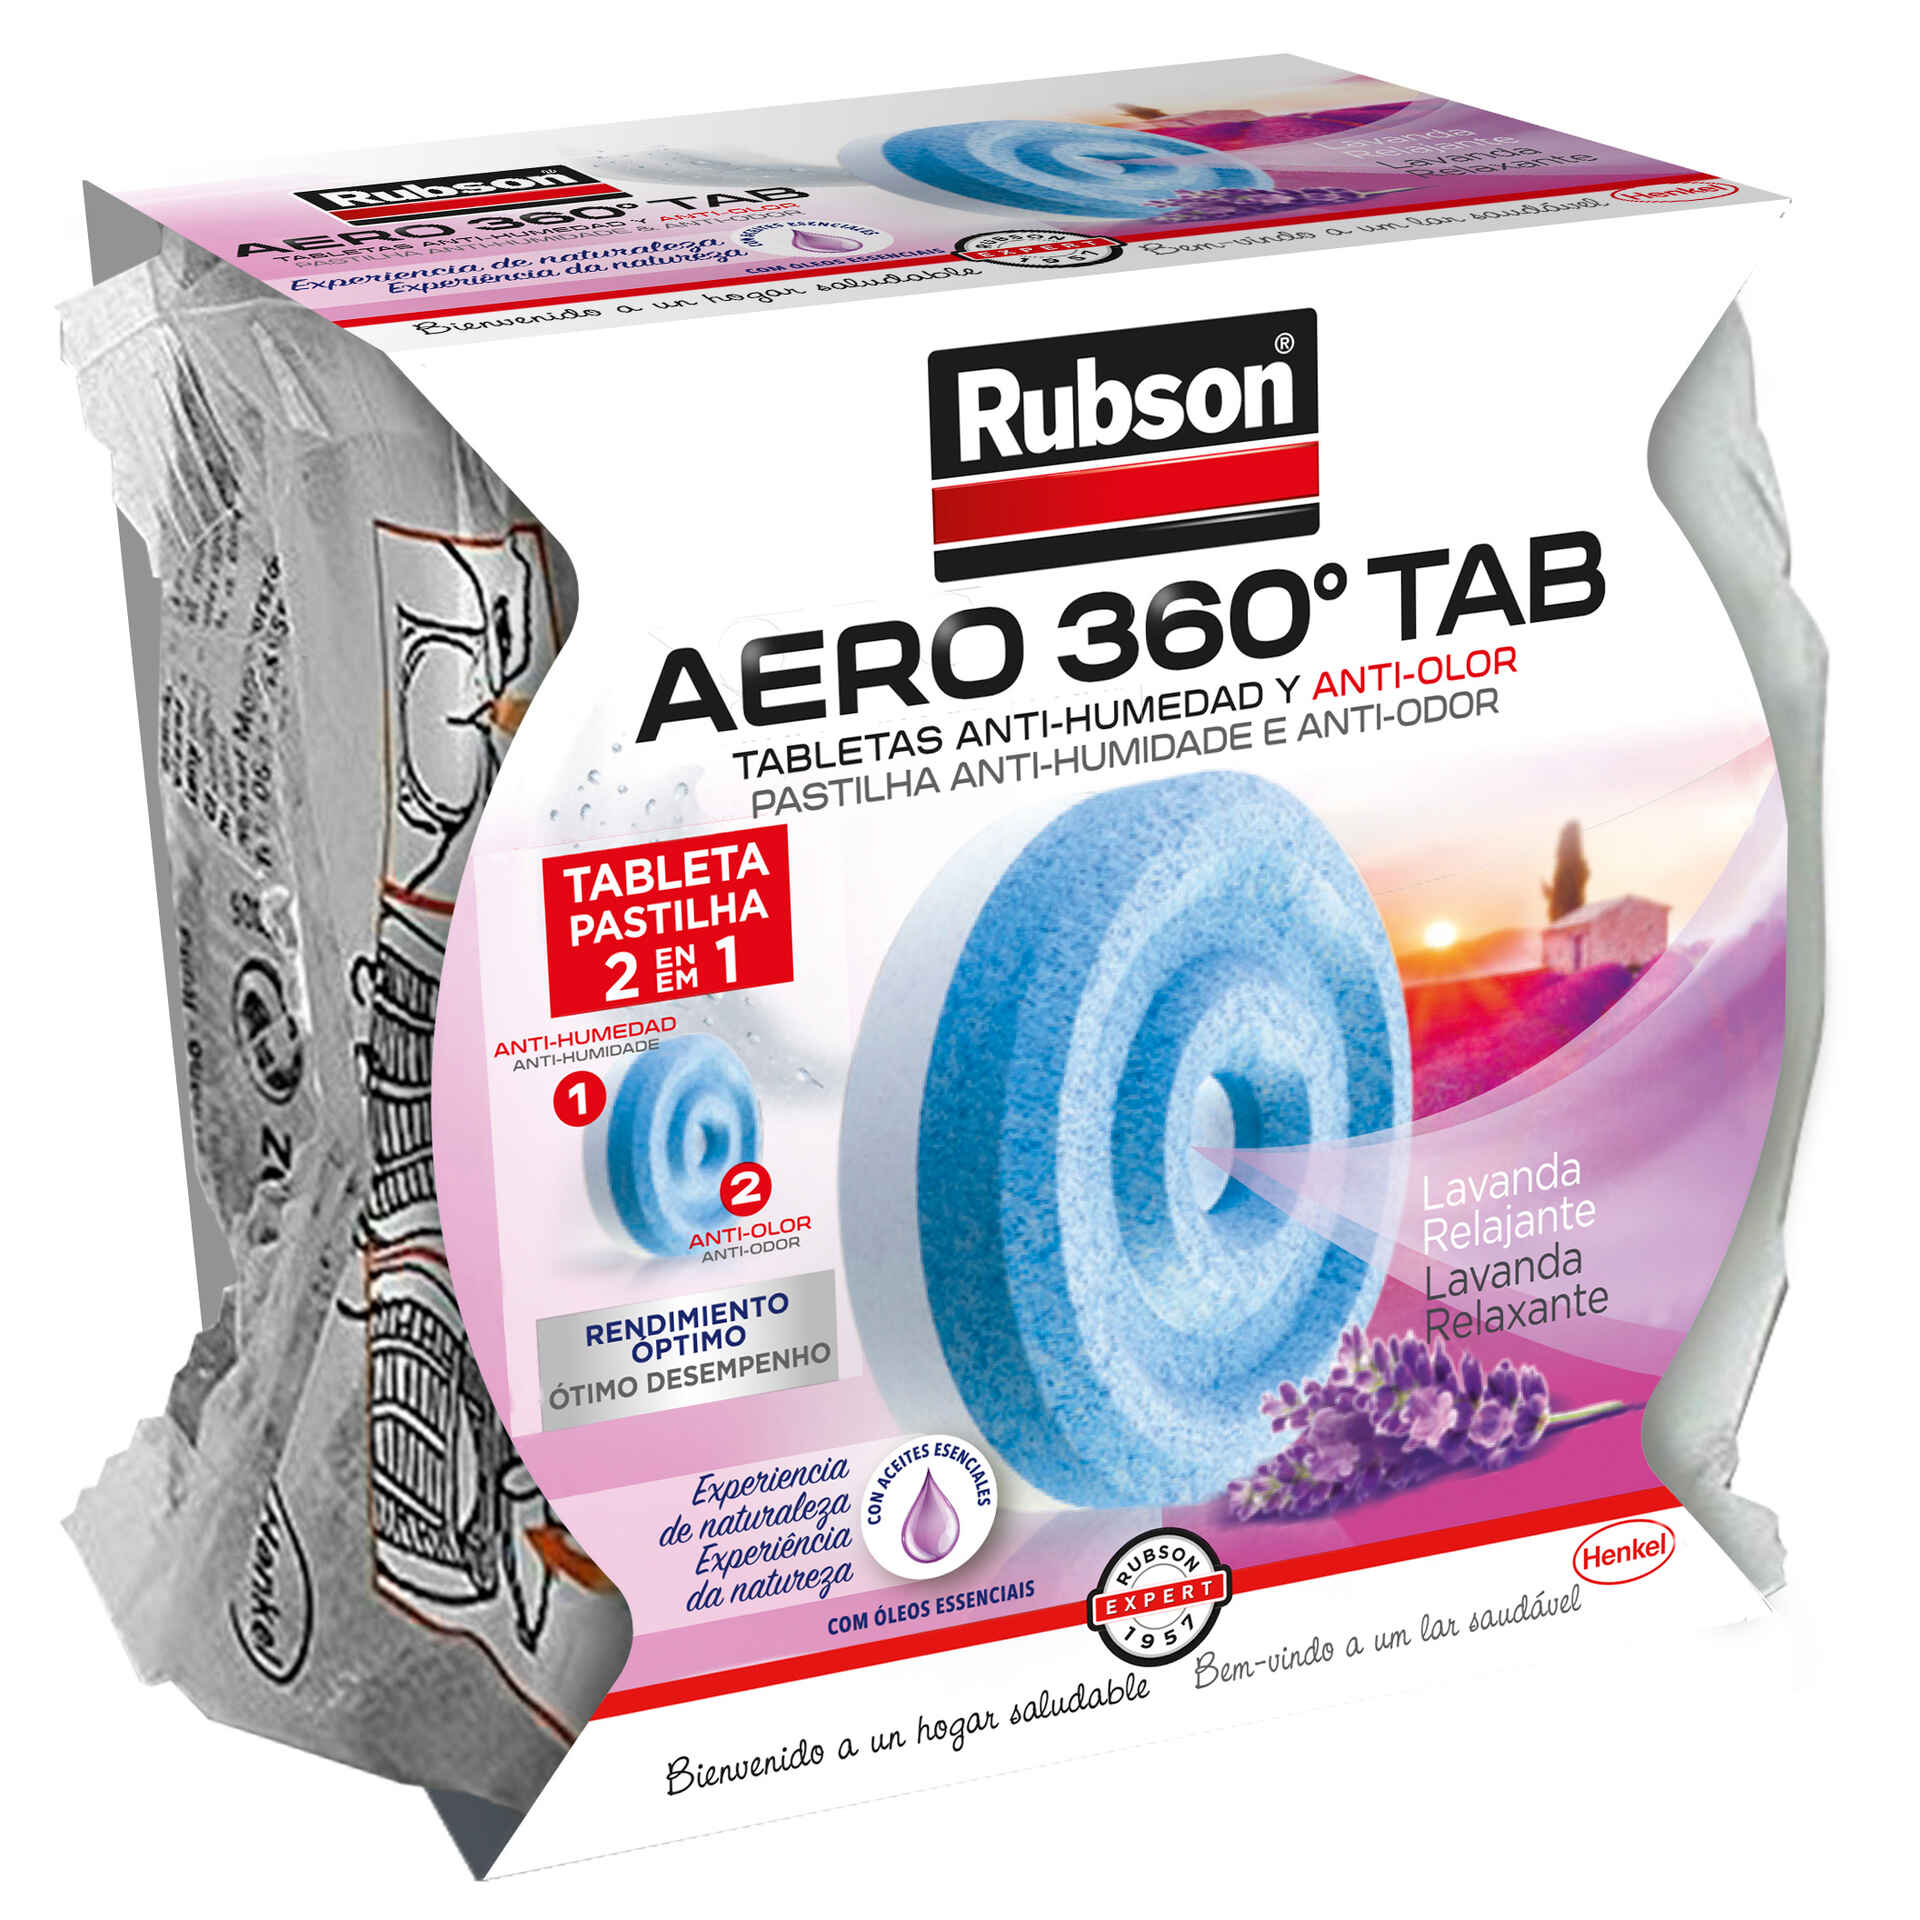 Desumidificador Inodoro Aero 360° com Oferta de Recarga - emb. 450 gr -  Rubson